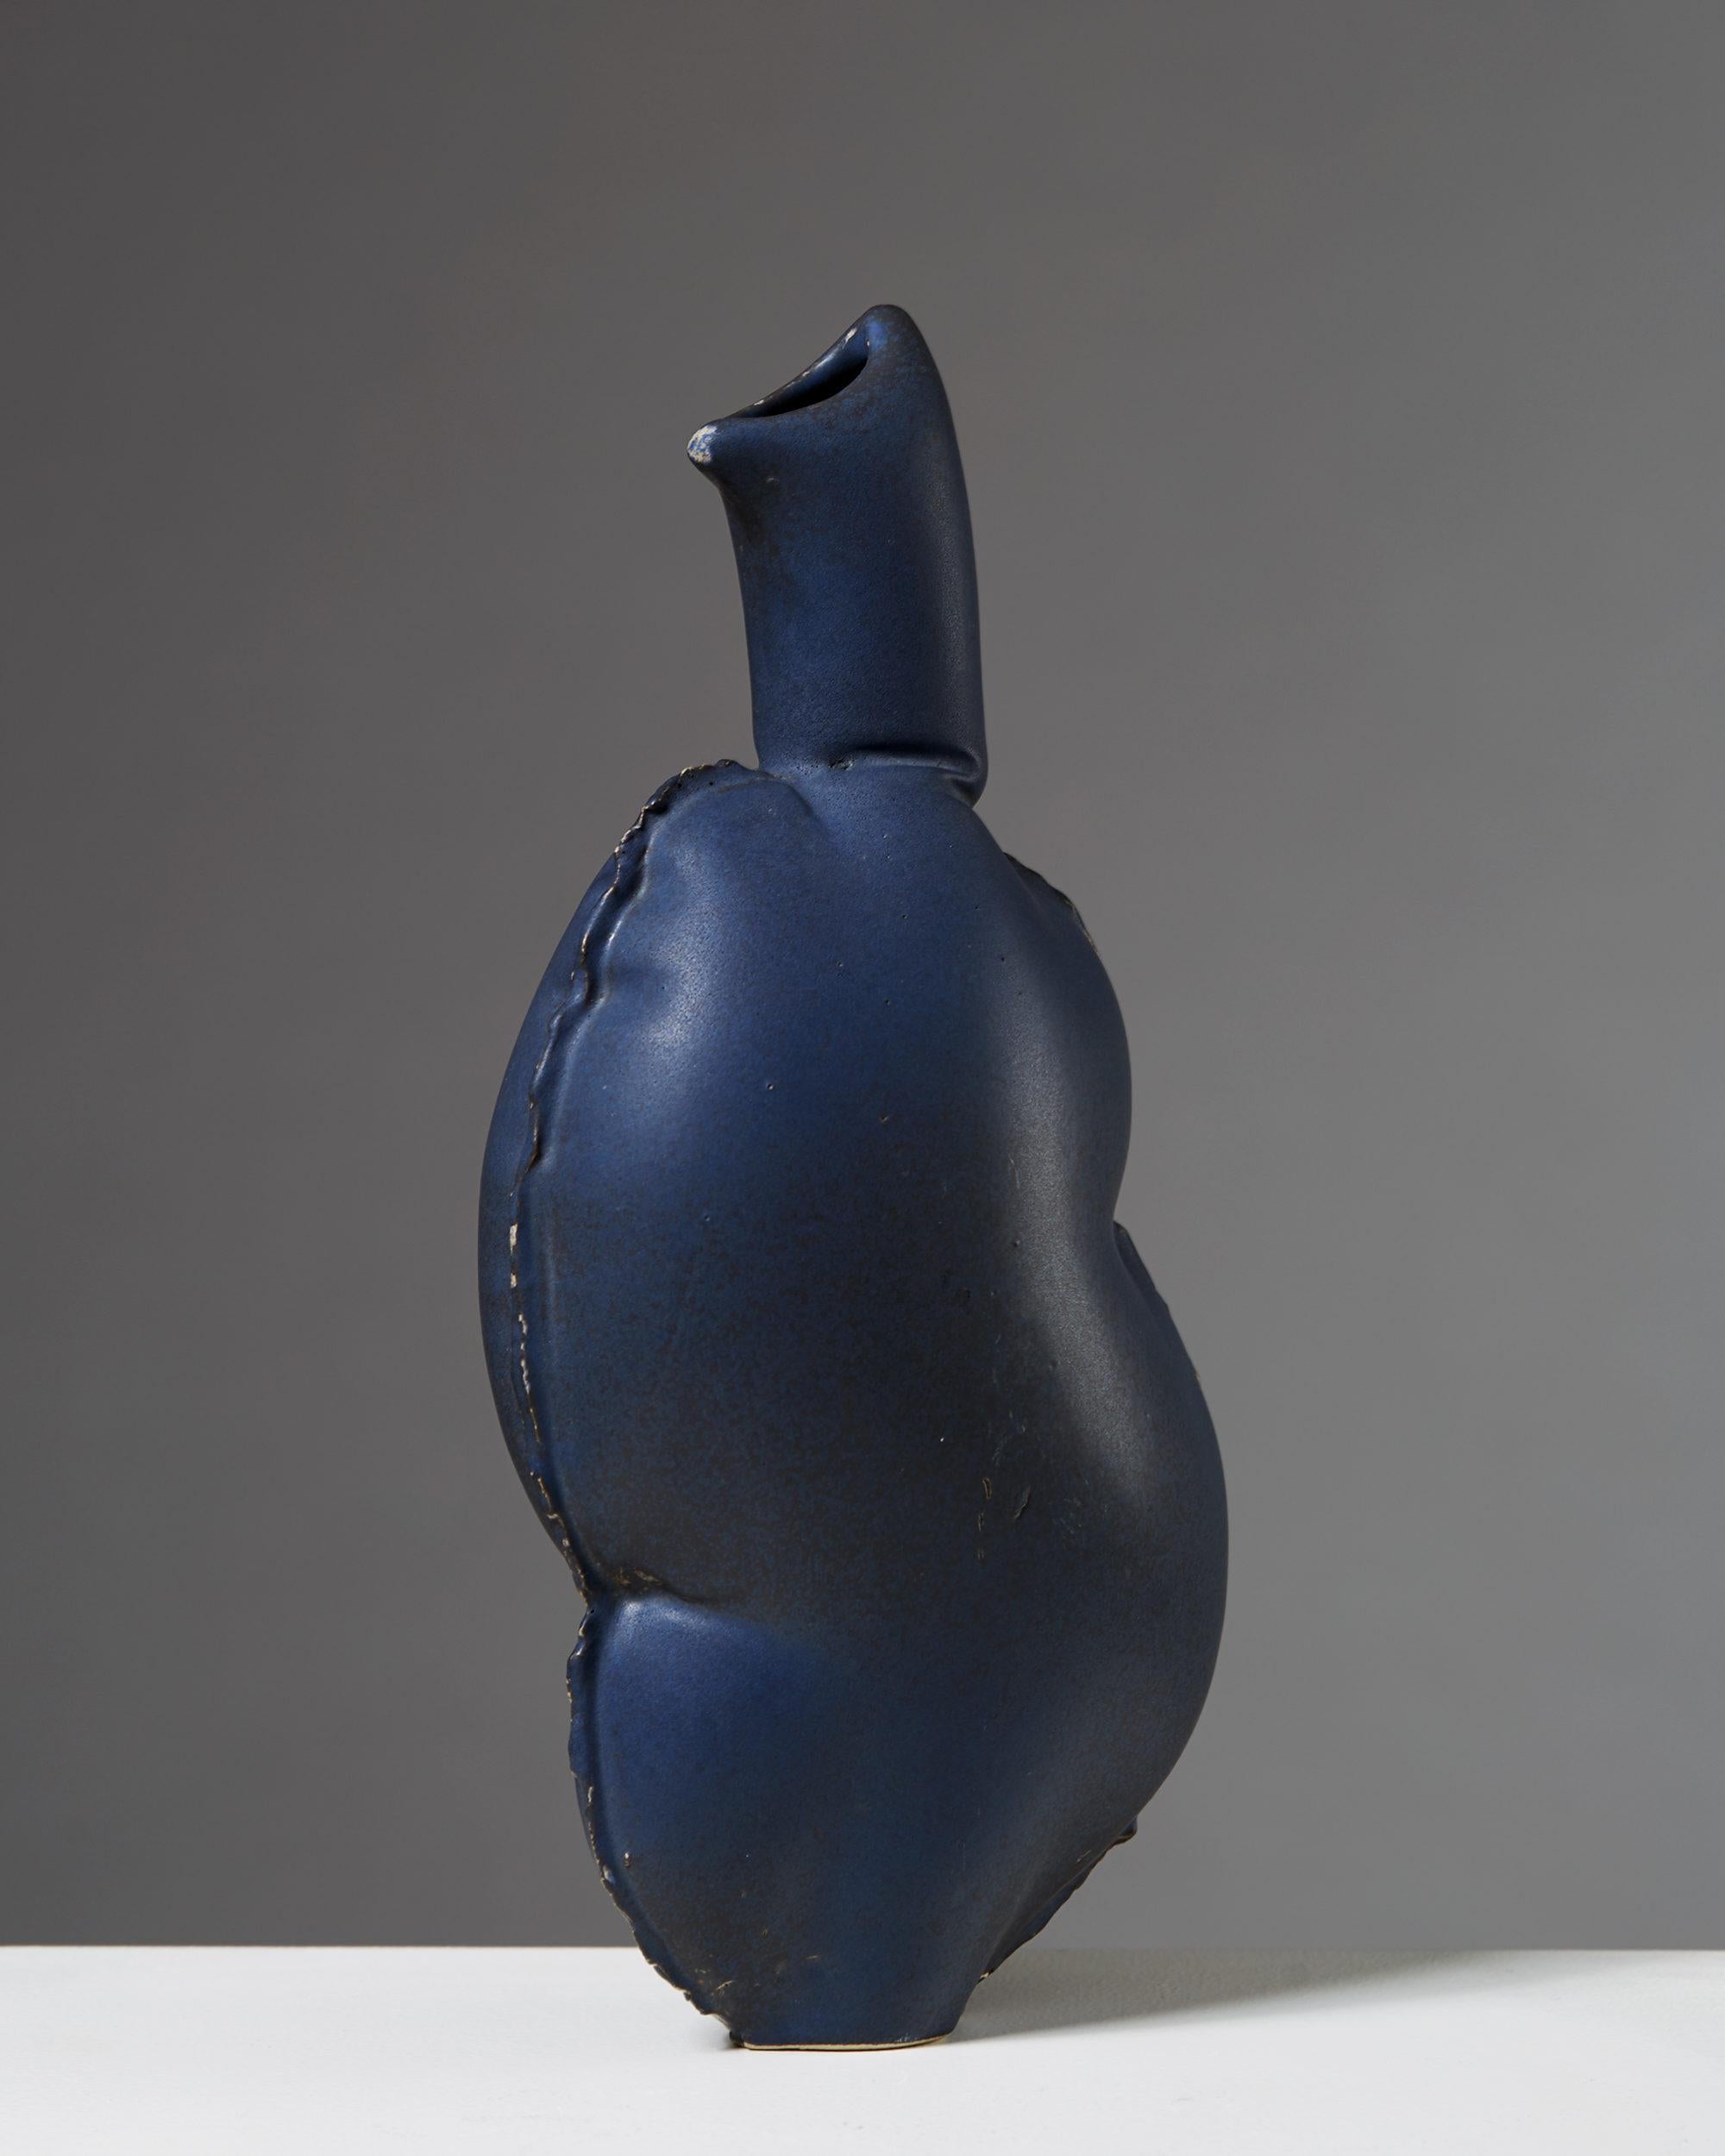 Ceramic vessel made by Mia Göransson, Sweden. Stoneware.

Signed 'Mia'.